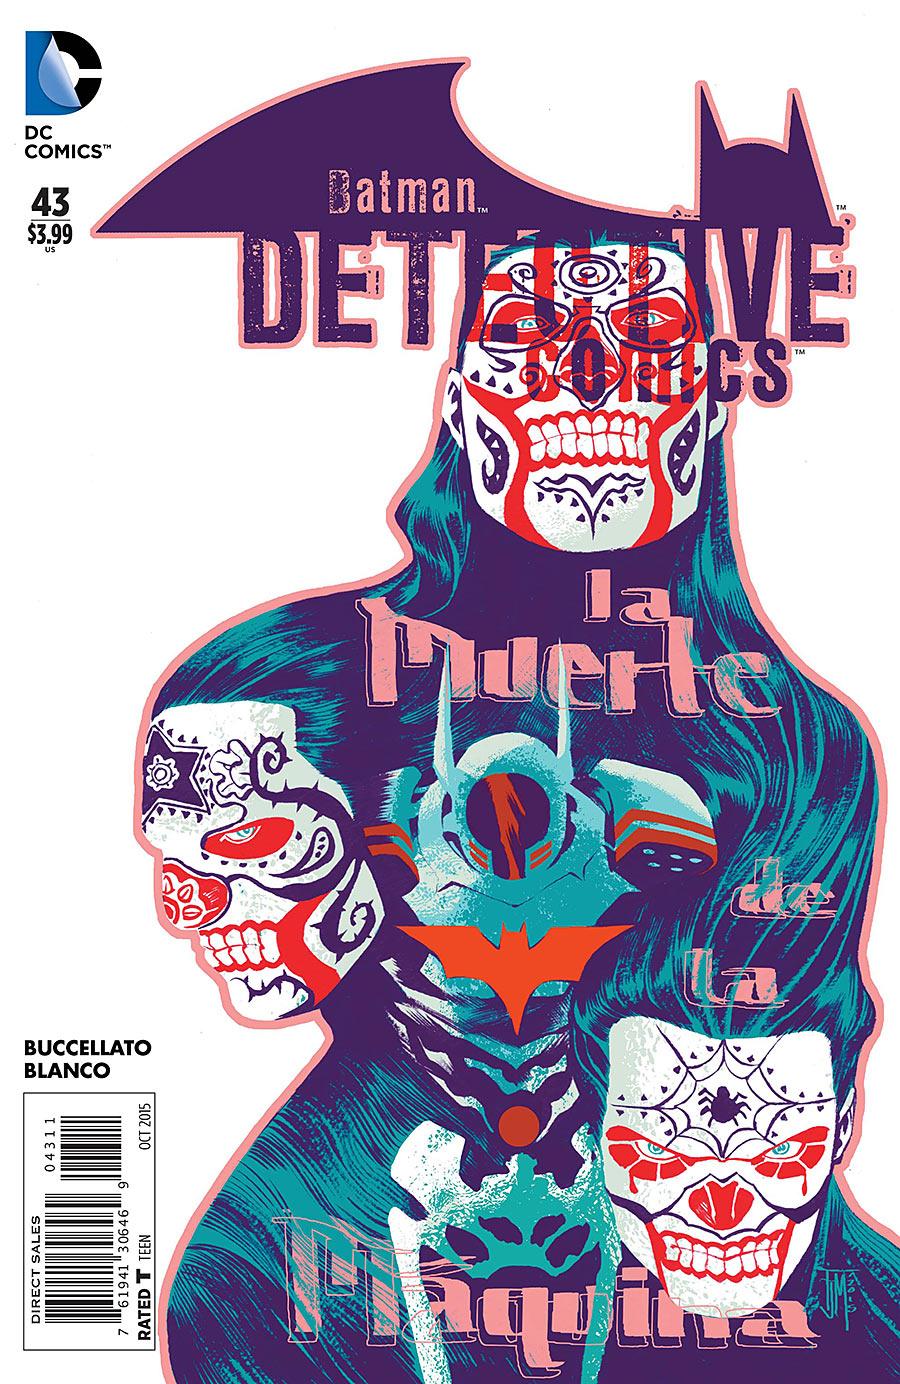 Detective Comics Vol. 2 #43